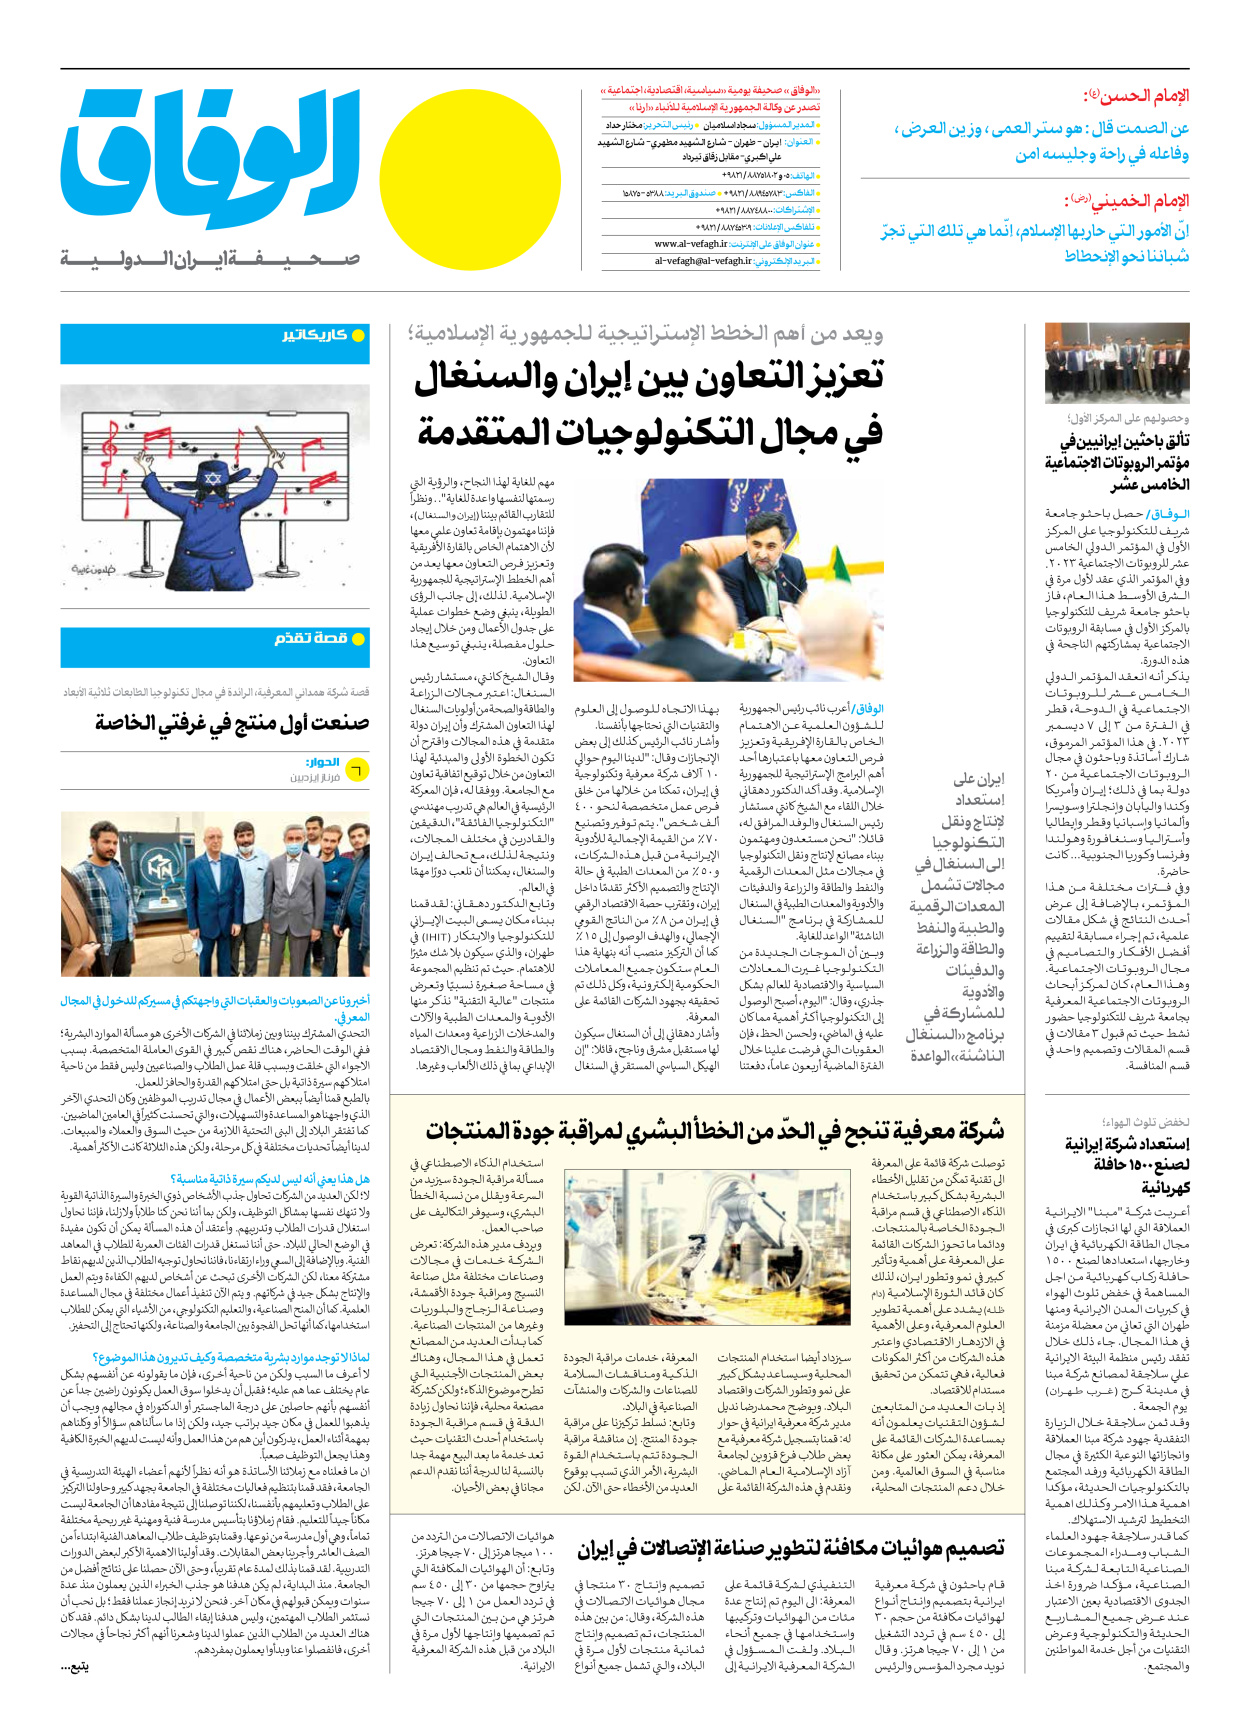 صحیفة ایران الدولیة الوفاق - العدد سبعة آلاف وأربعمائة - ١٢ ديسمبر ٢٠٢٣ - الصفحة ۱۲